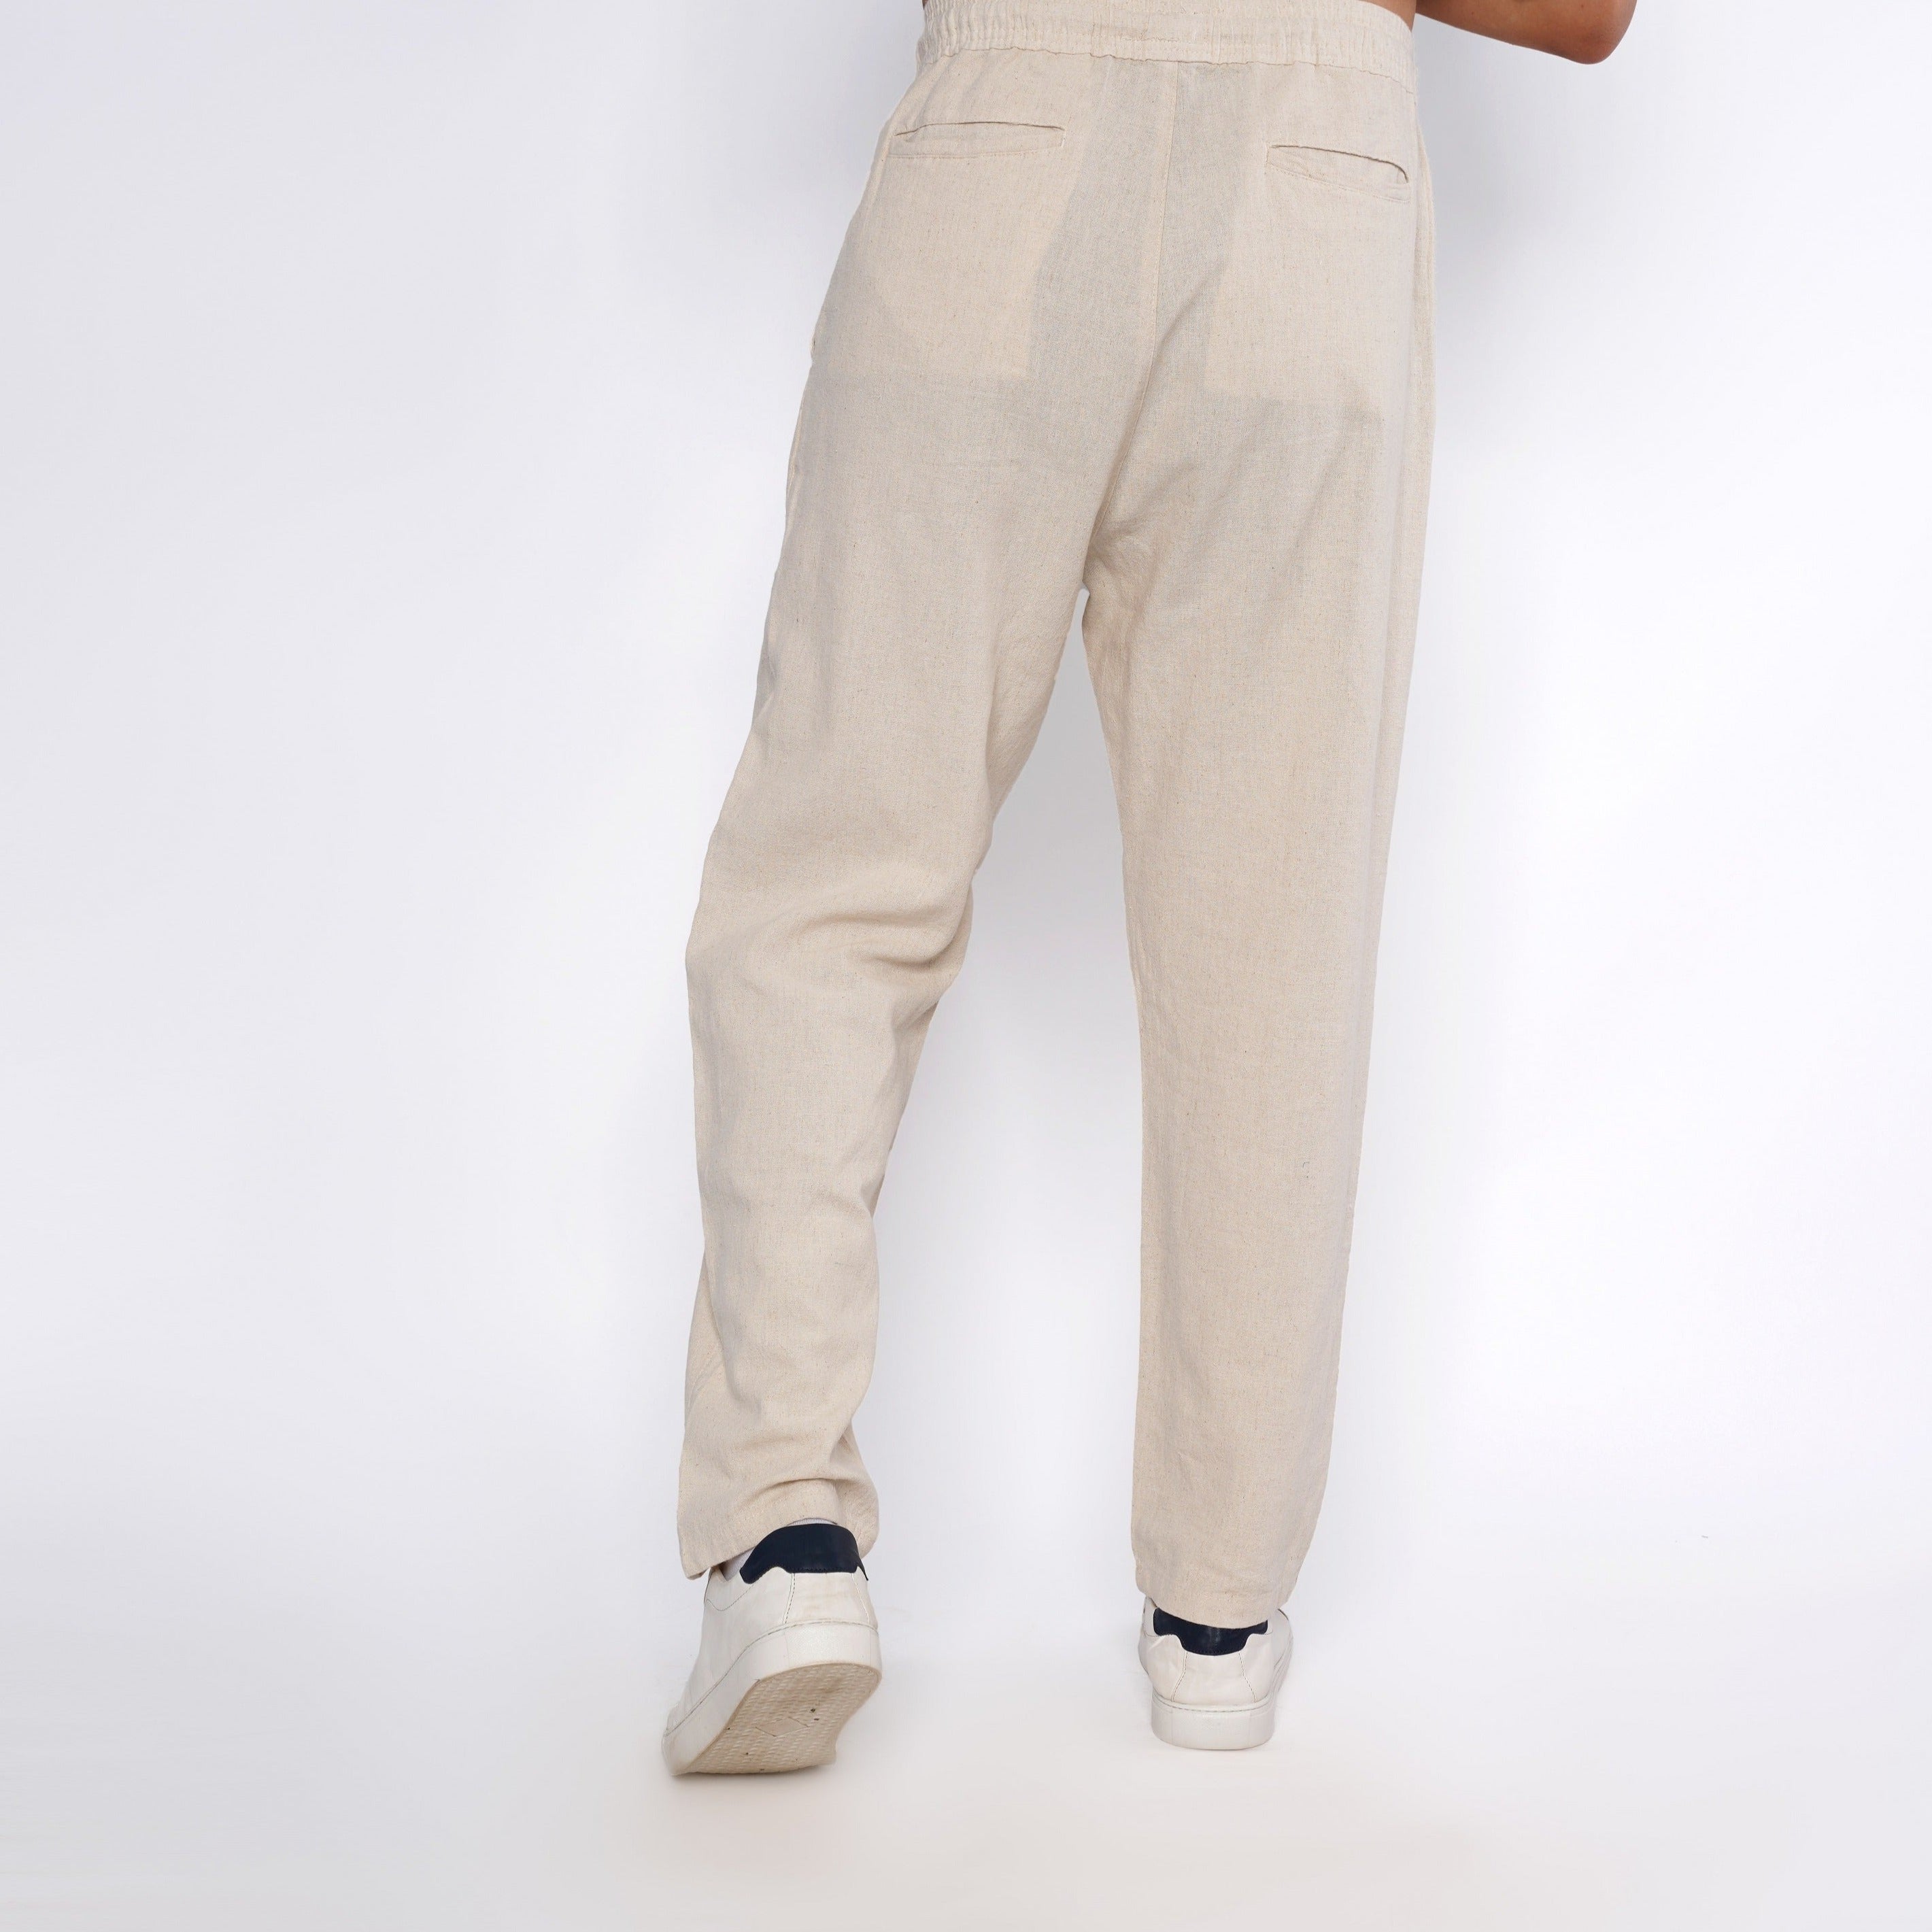 M24NT907- Men's linen pants for summer 24